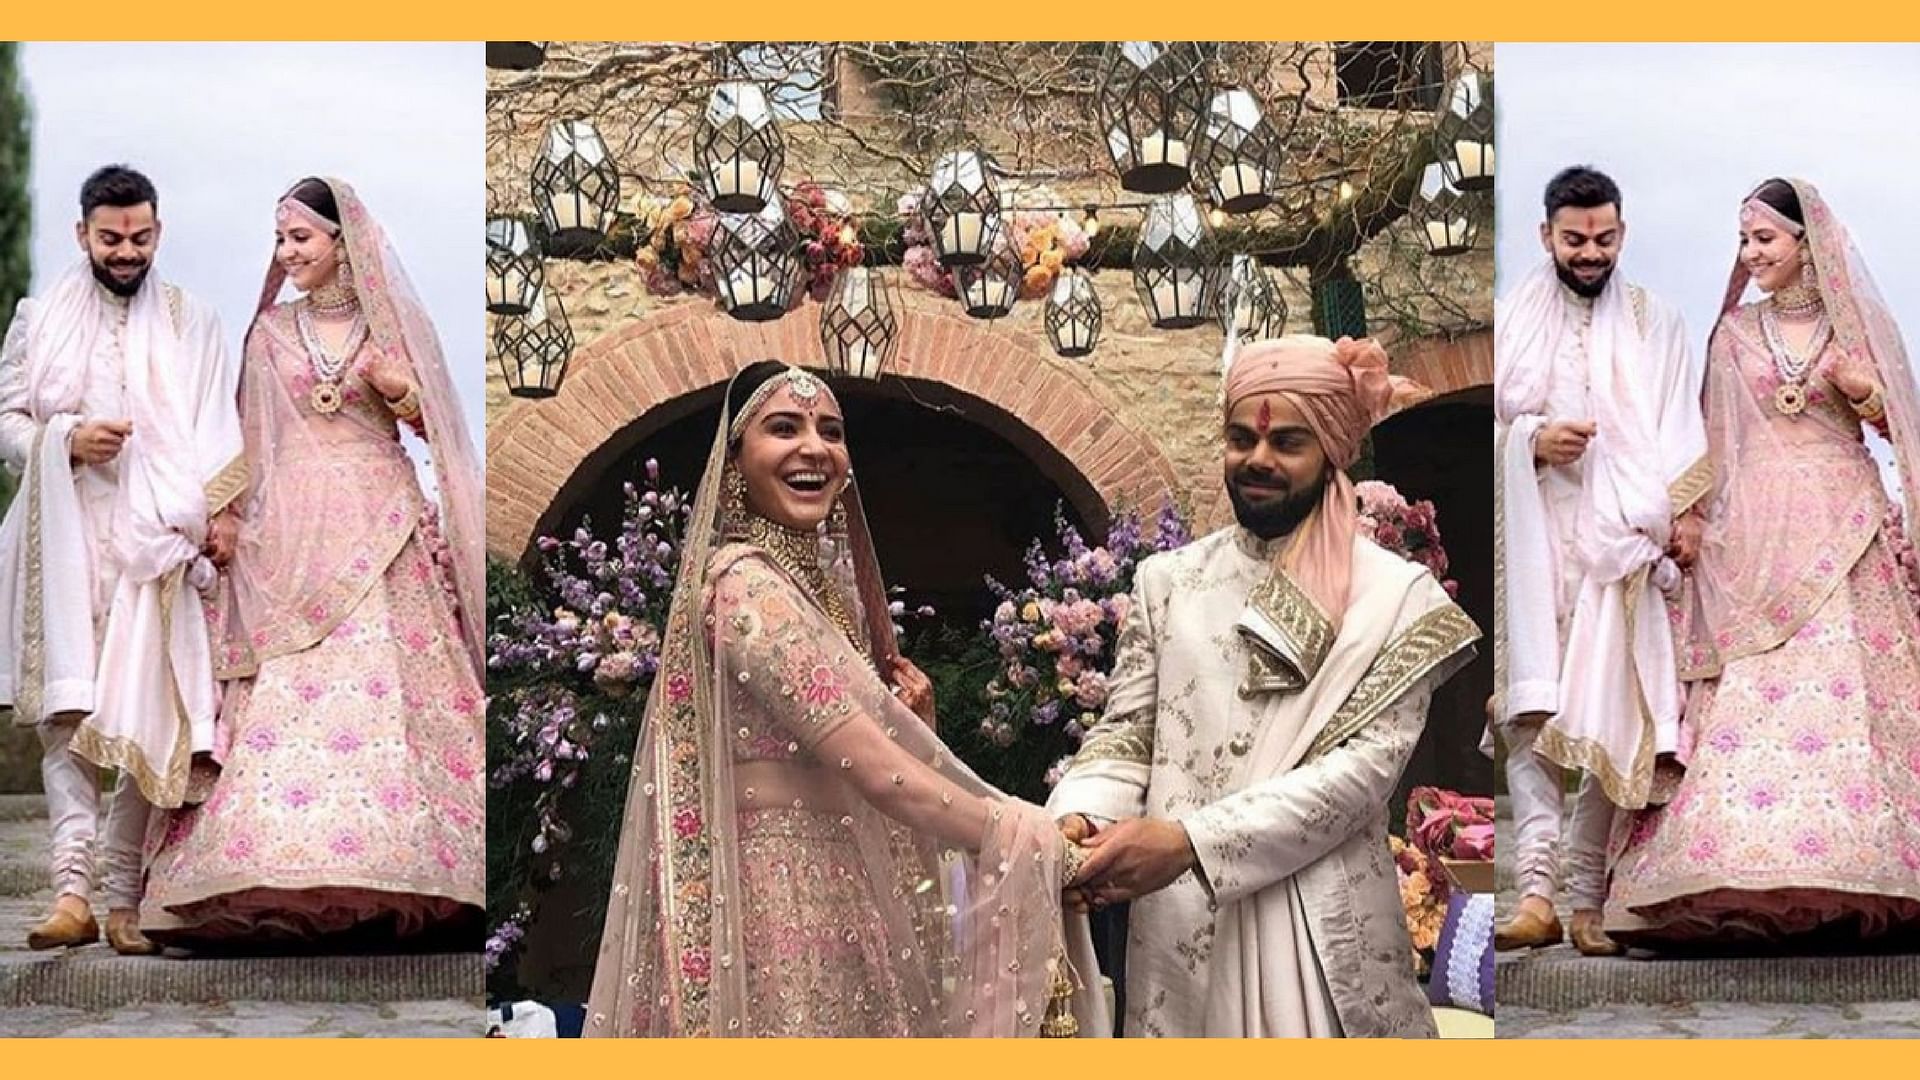 विराट कोहली और अनुष्का शर्मा ने साल 2017 में इटली के टस्कैनी में शादी की थी